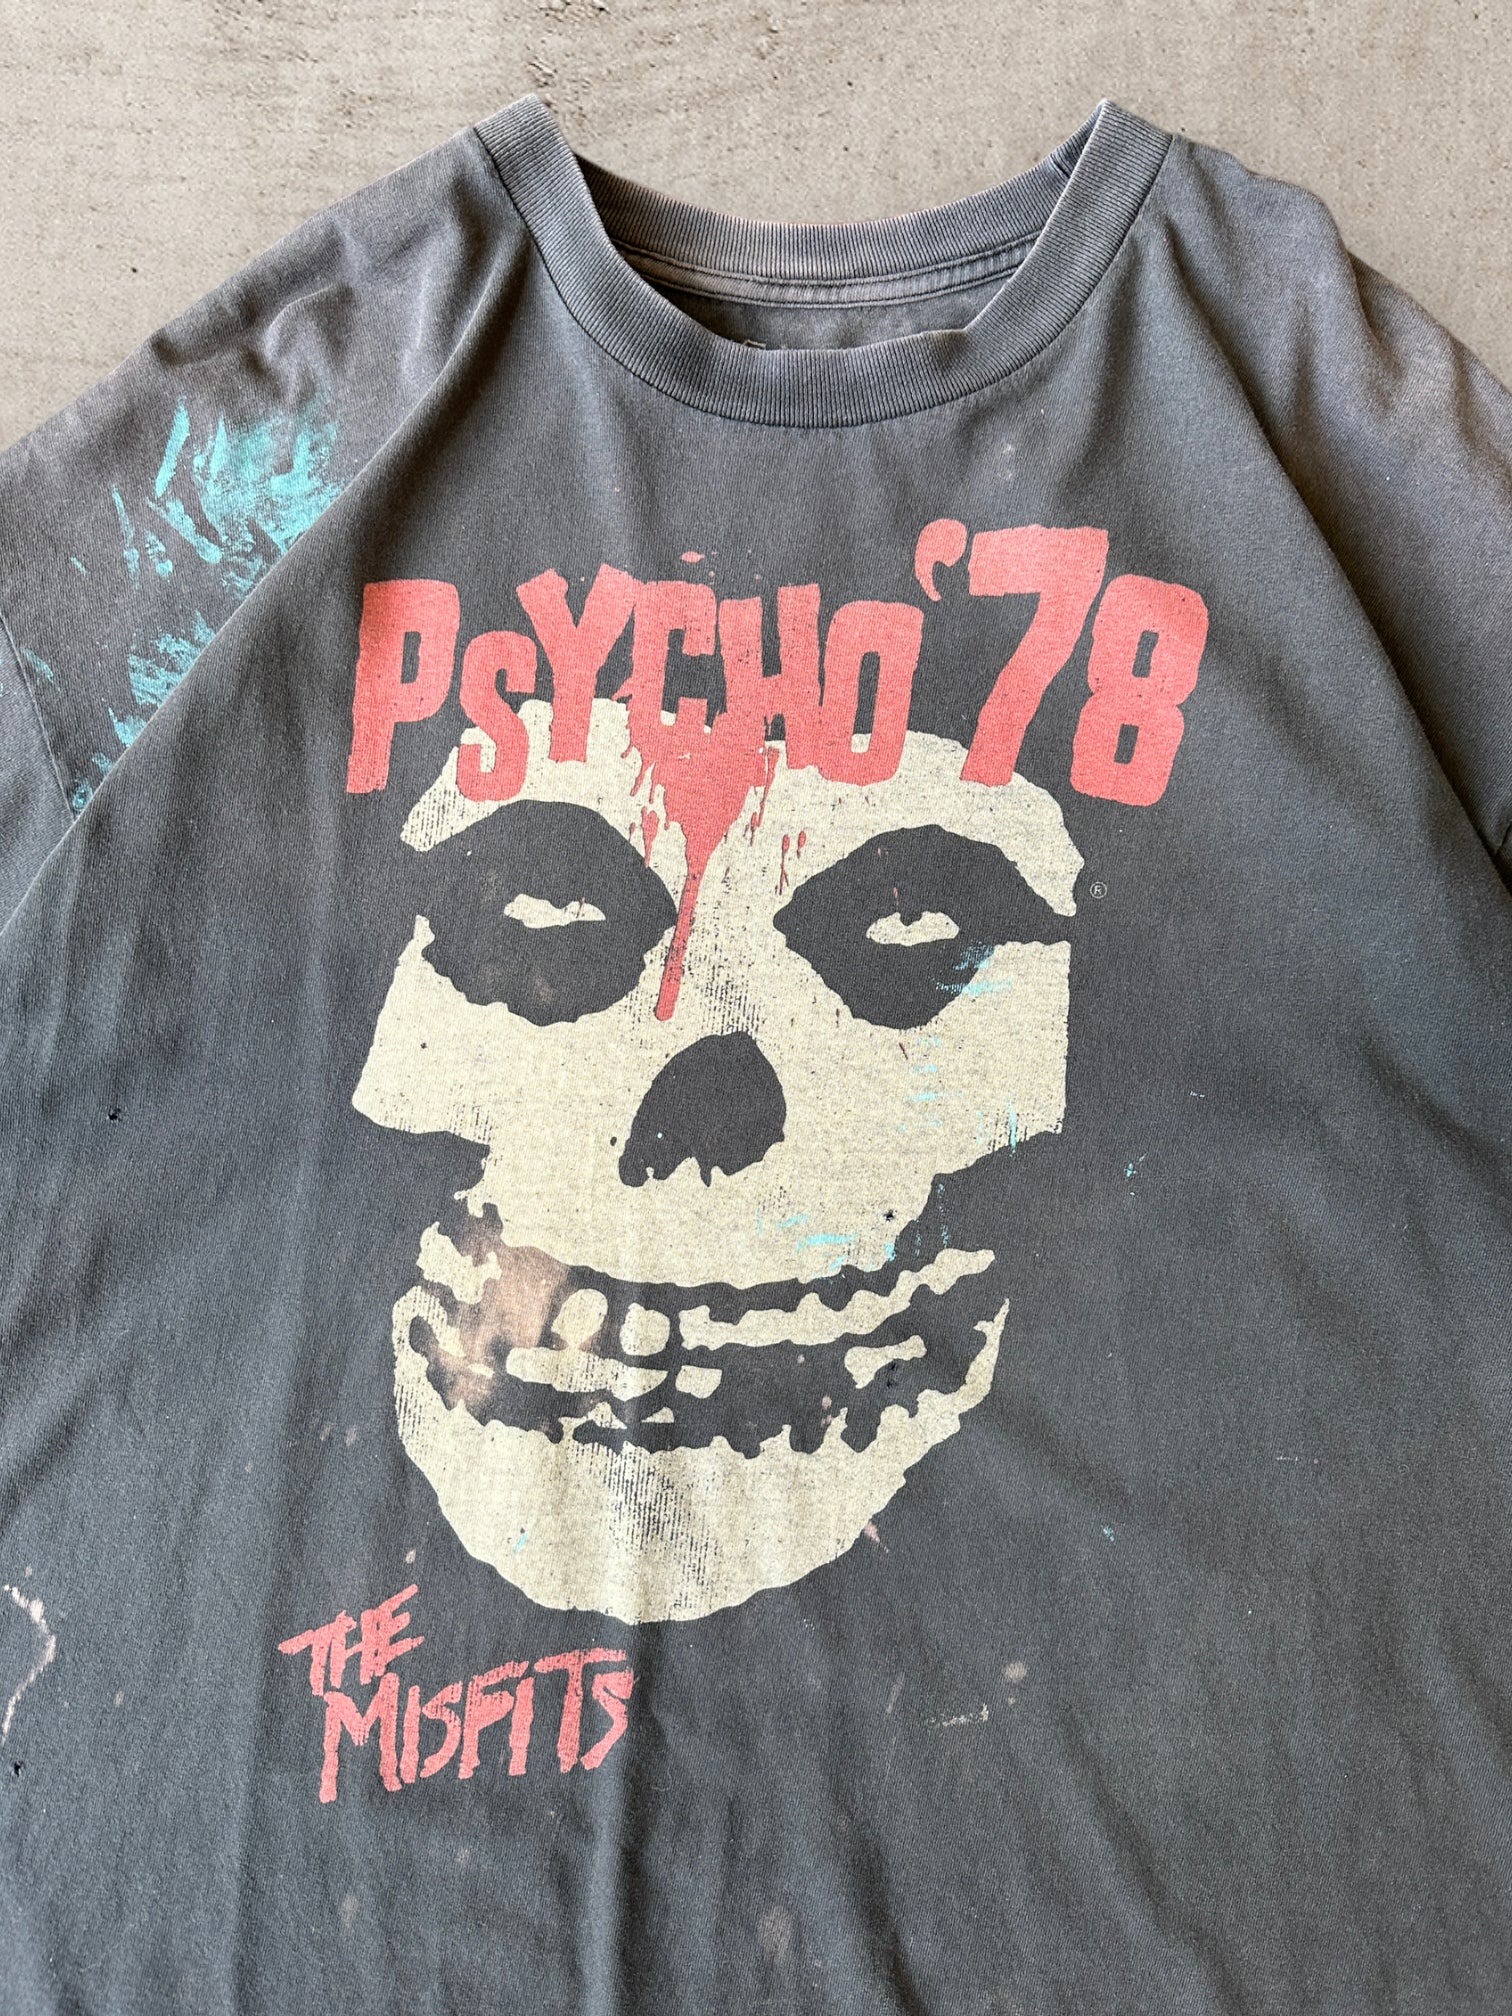 00s Misfits Psycho 78 Distressed T-Shirt - XXL